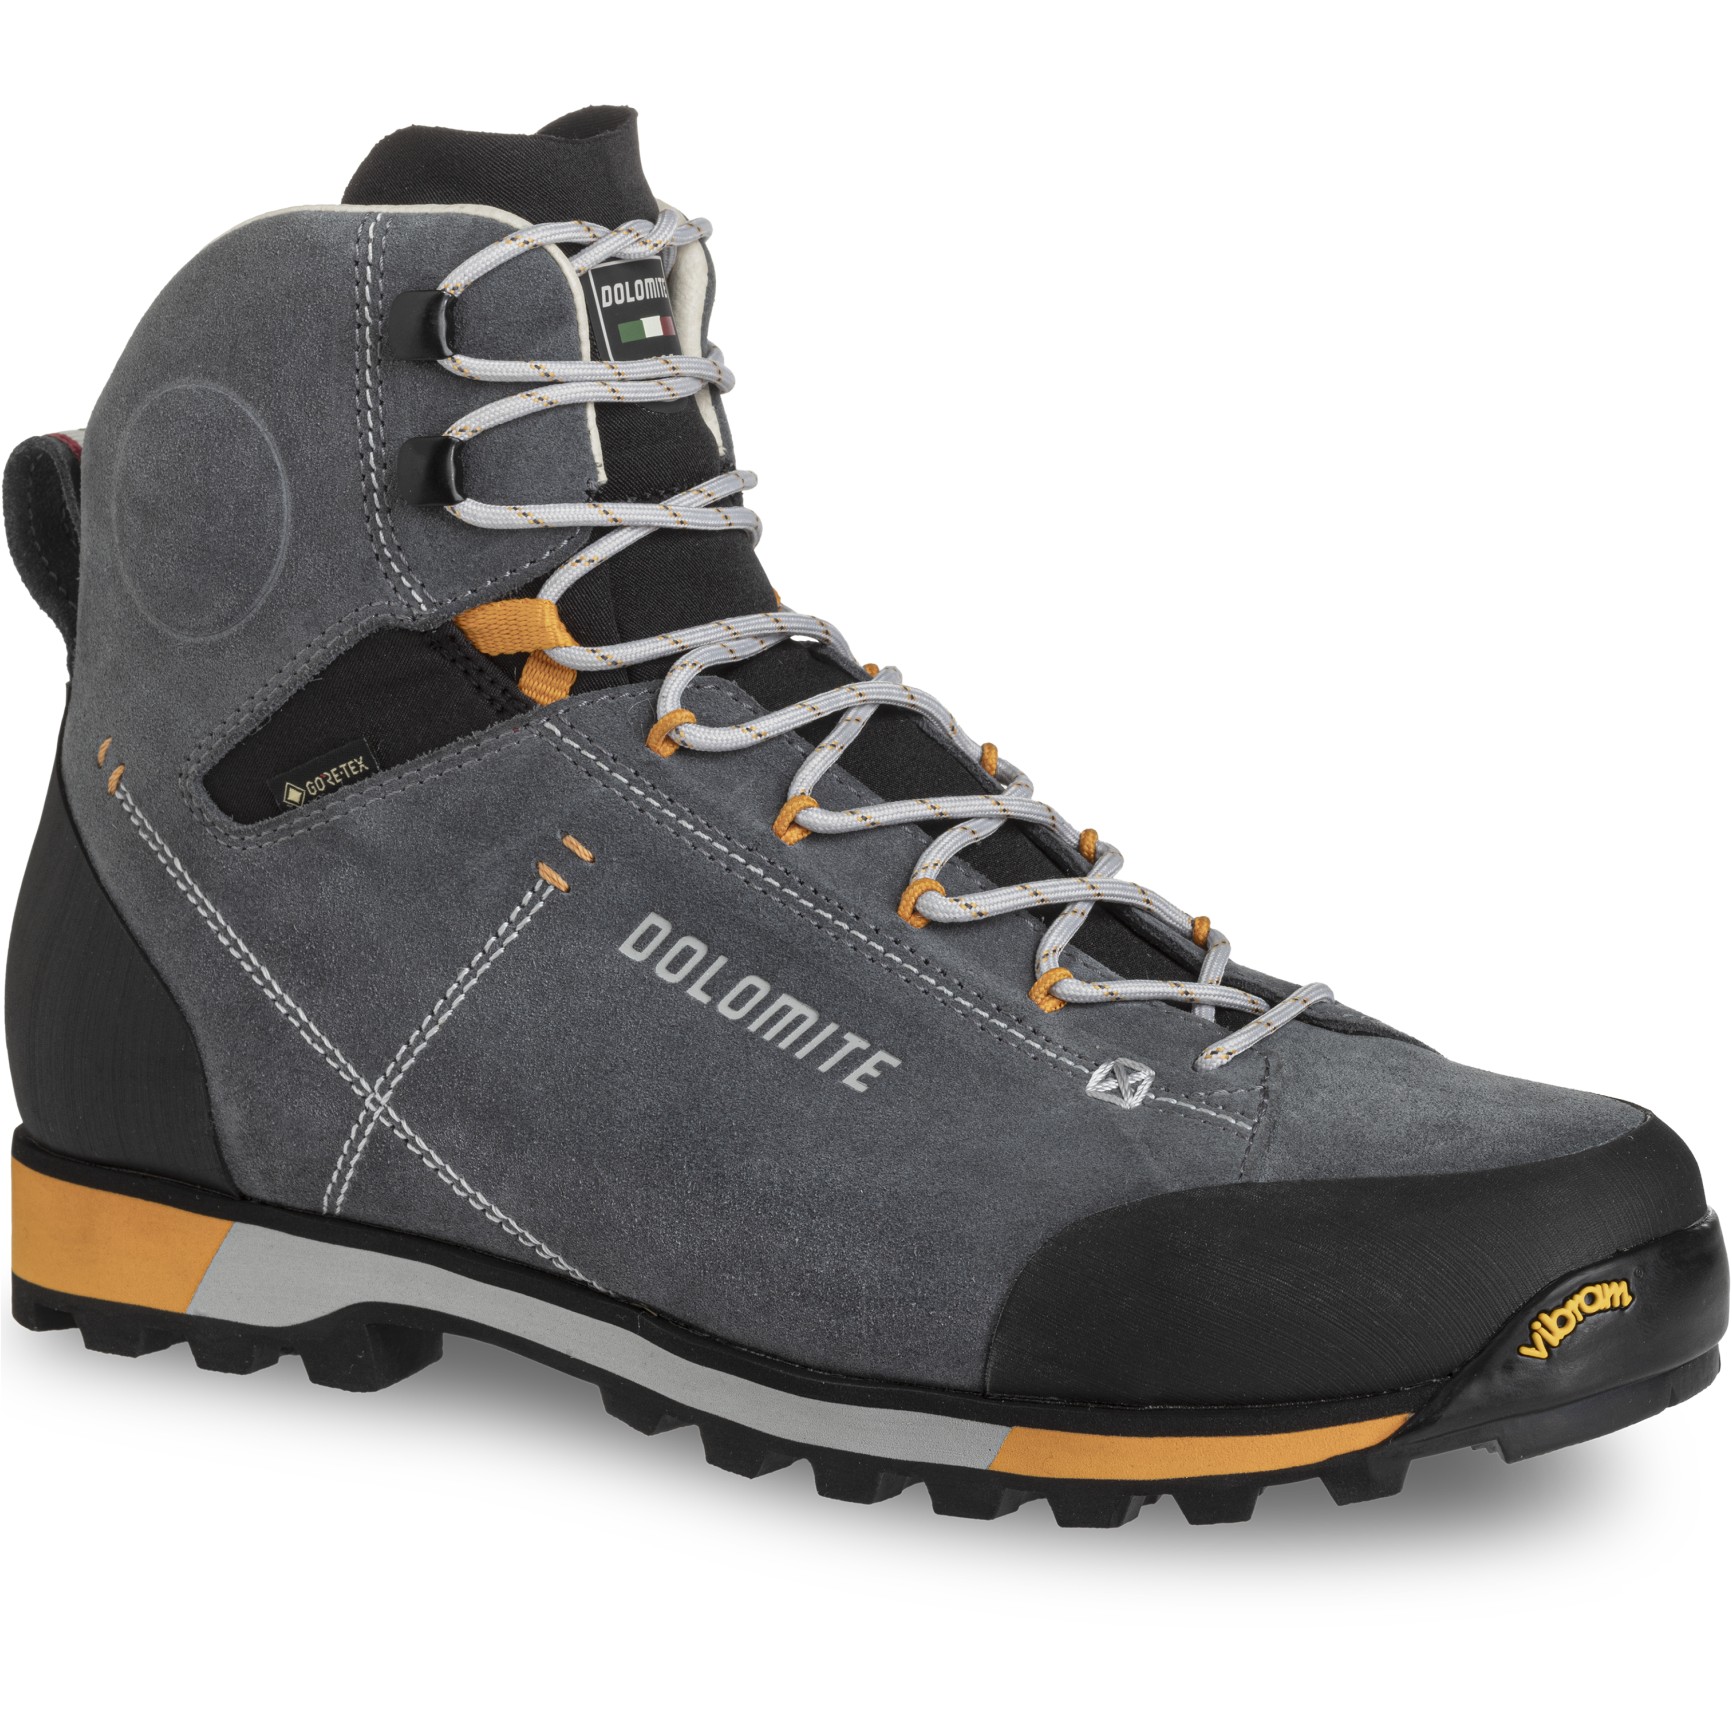 Productfoto van Dolomite 54 Hike Evo GTX Wandelschoenen Heren - gunmetal grey